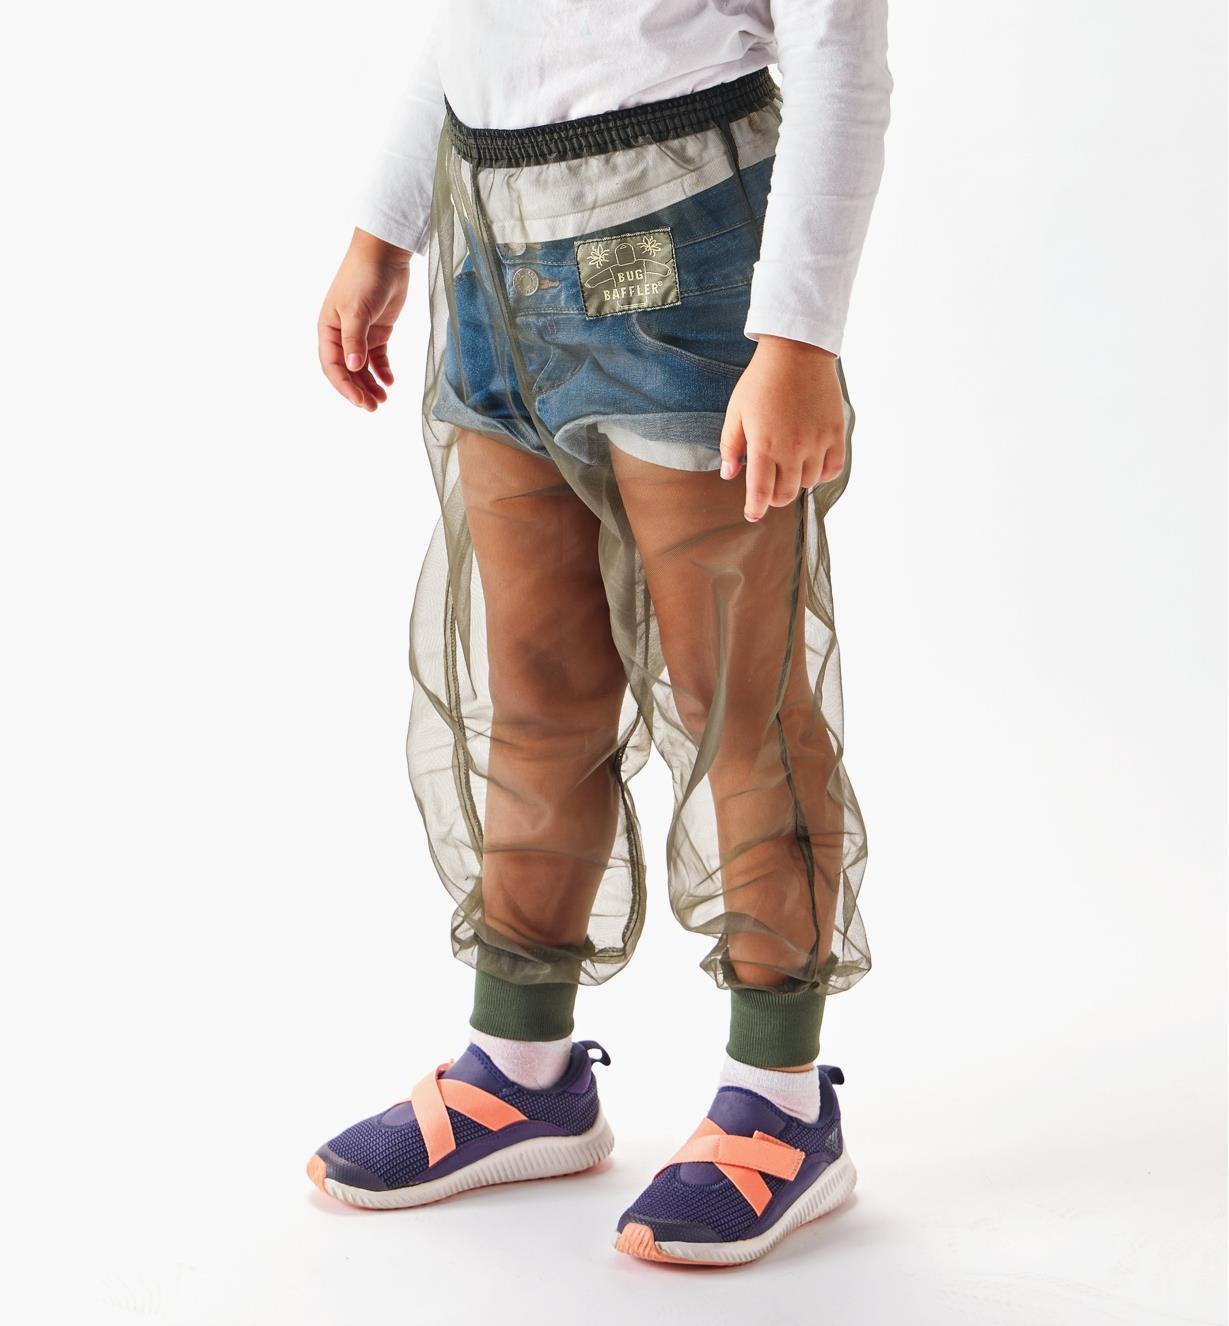 Enfant qui porte un pantalon antimoustiques